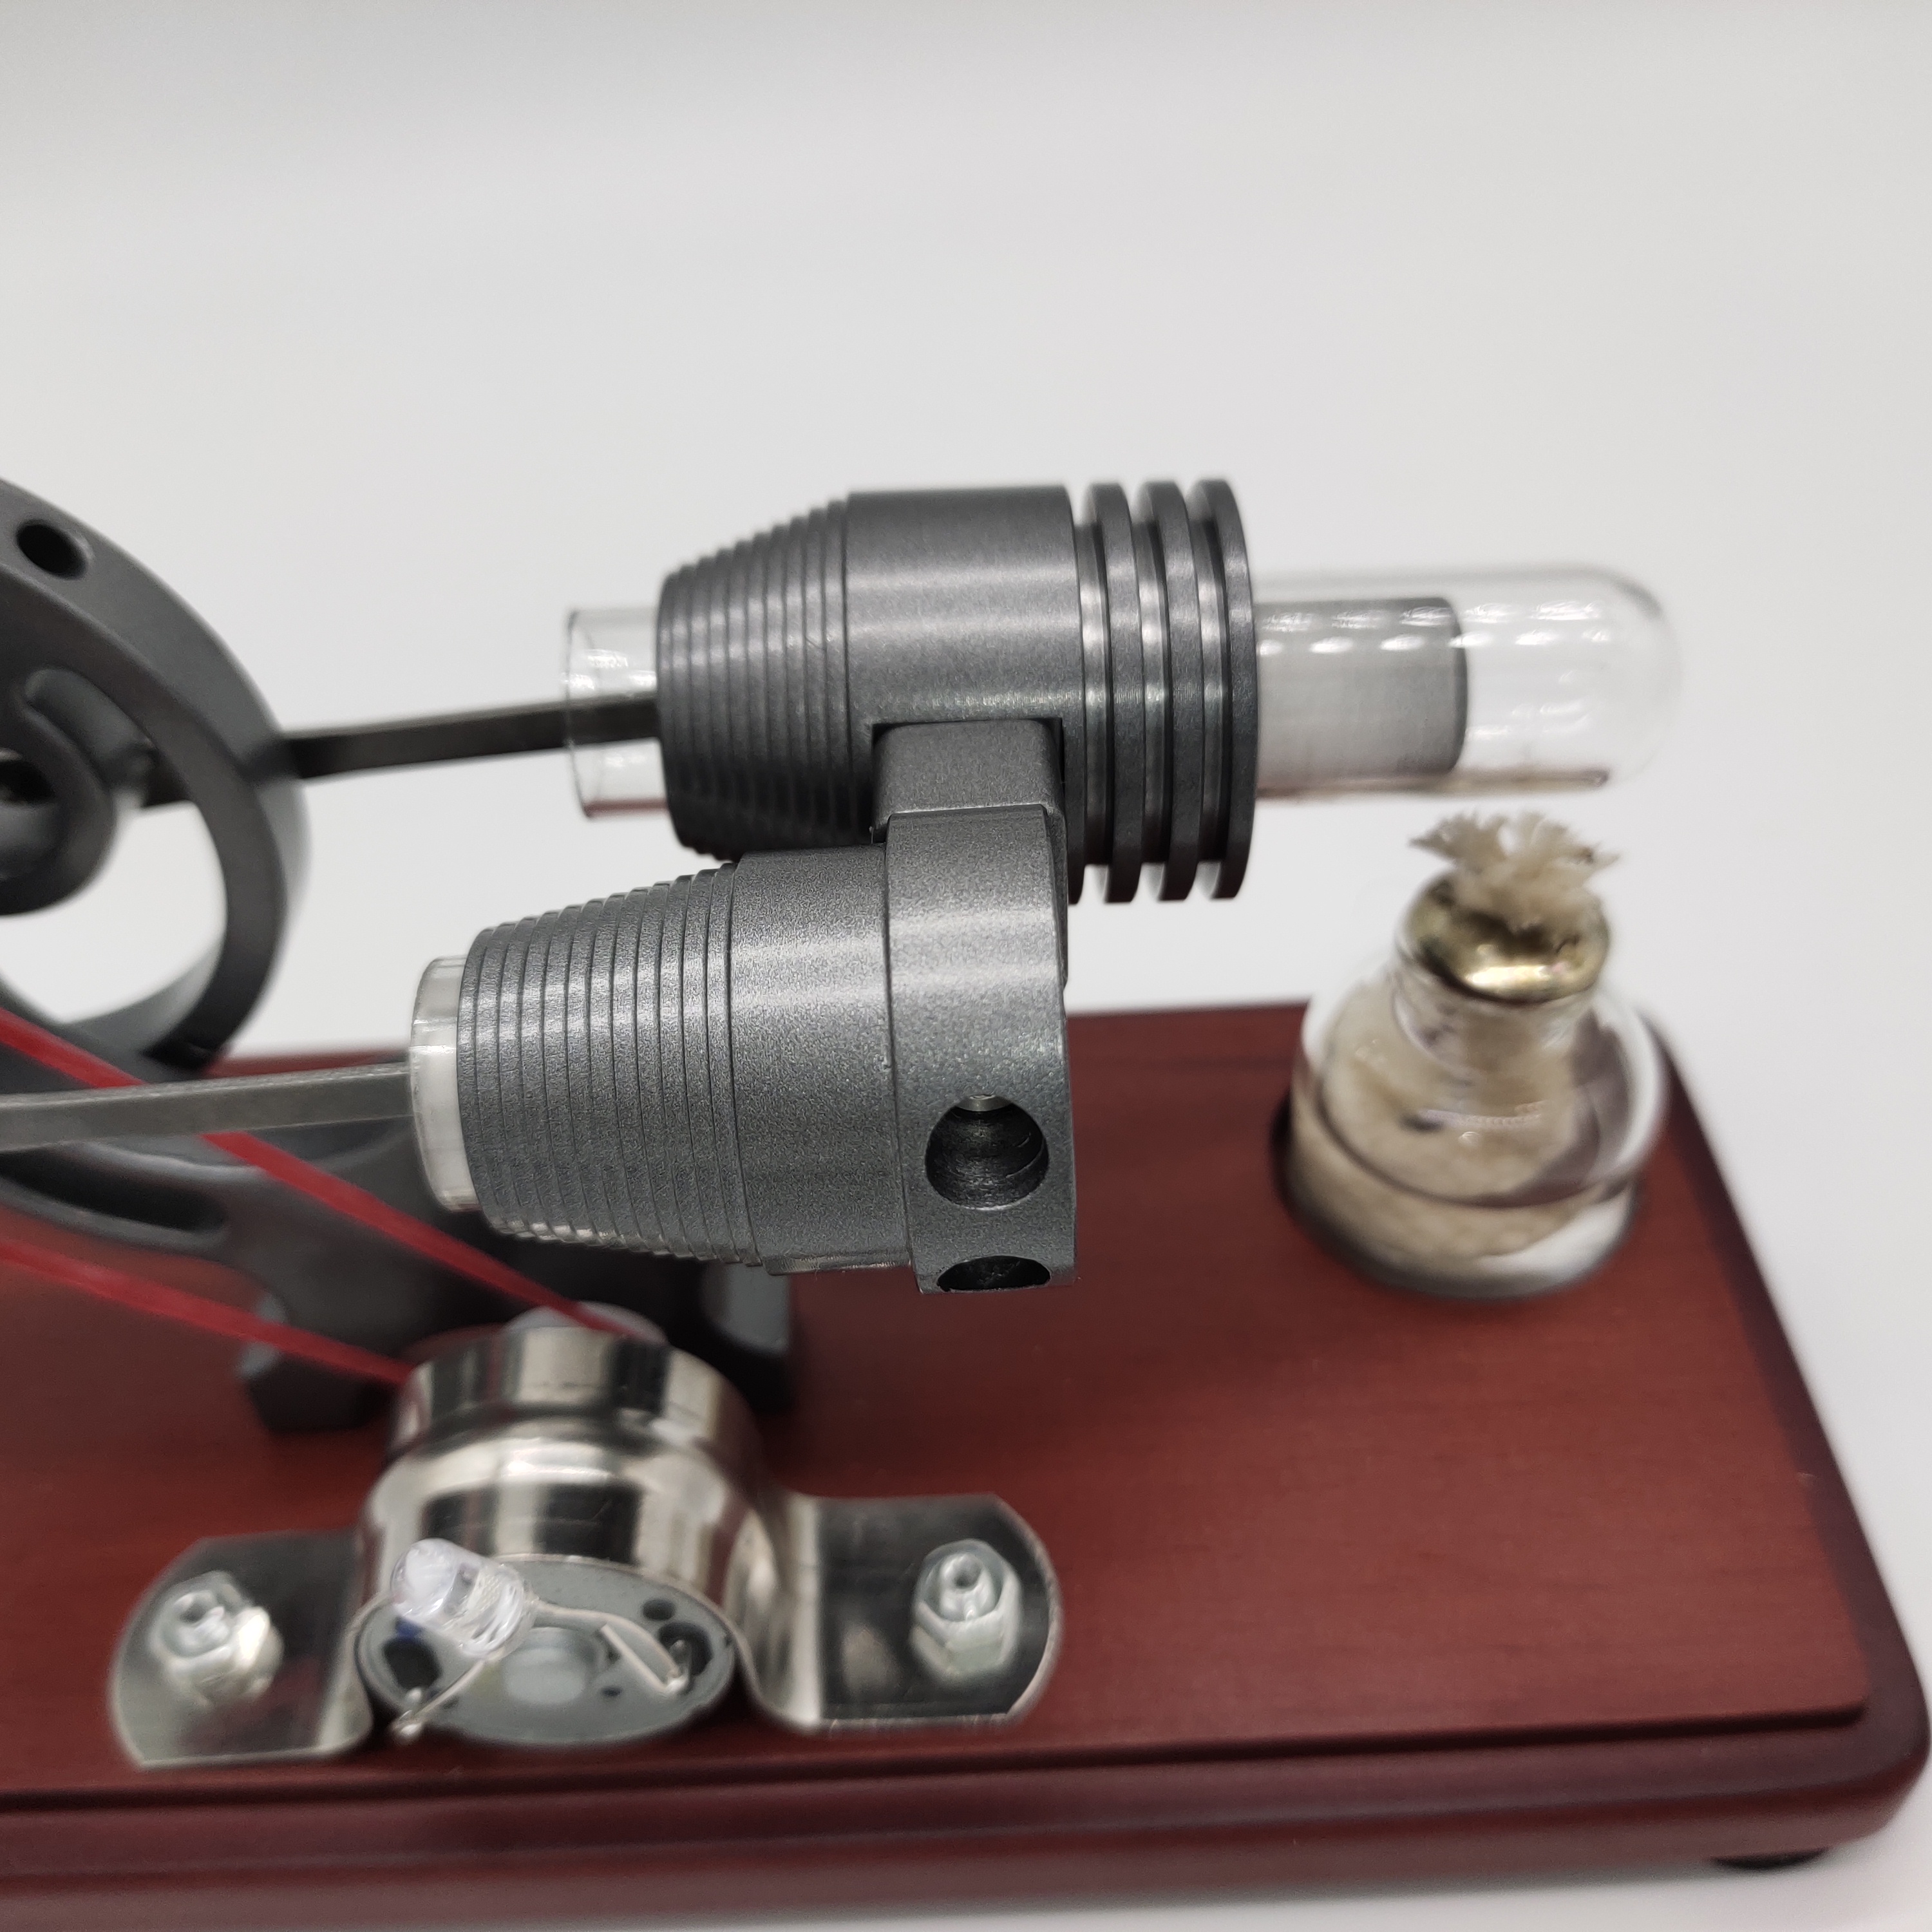 Wood Bottom Plate Stirling Generator With LED Light String Portable Bag Safe Packaging Stirling Engine - Photo: 2